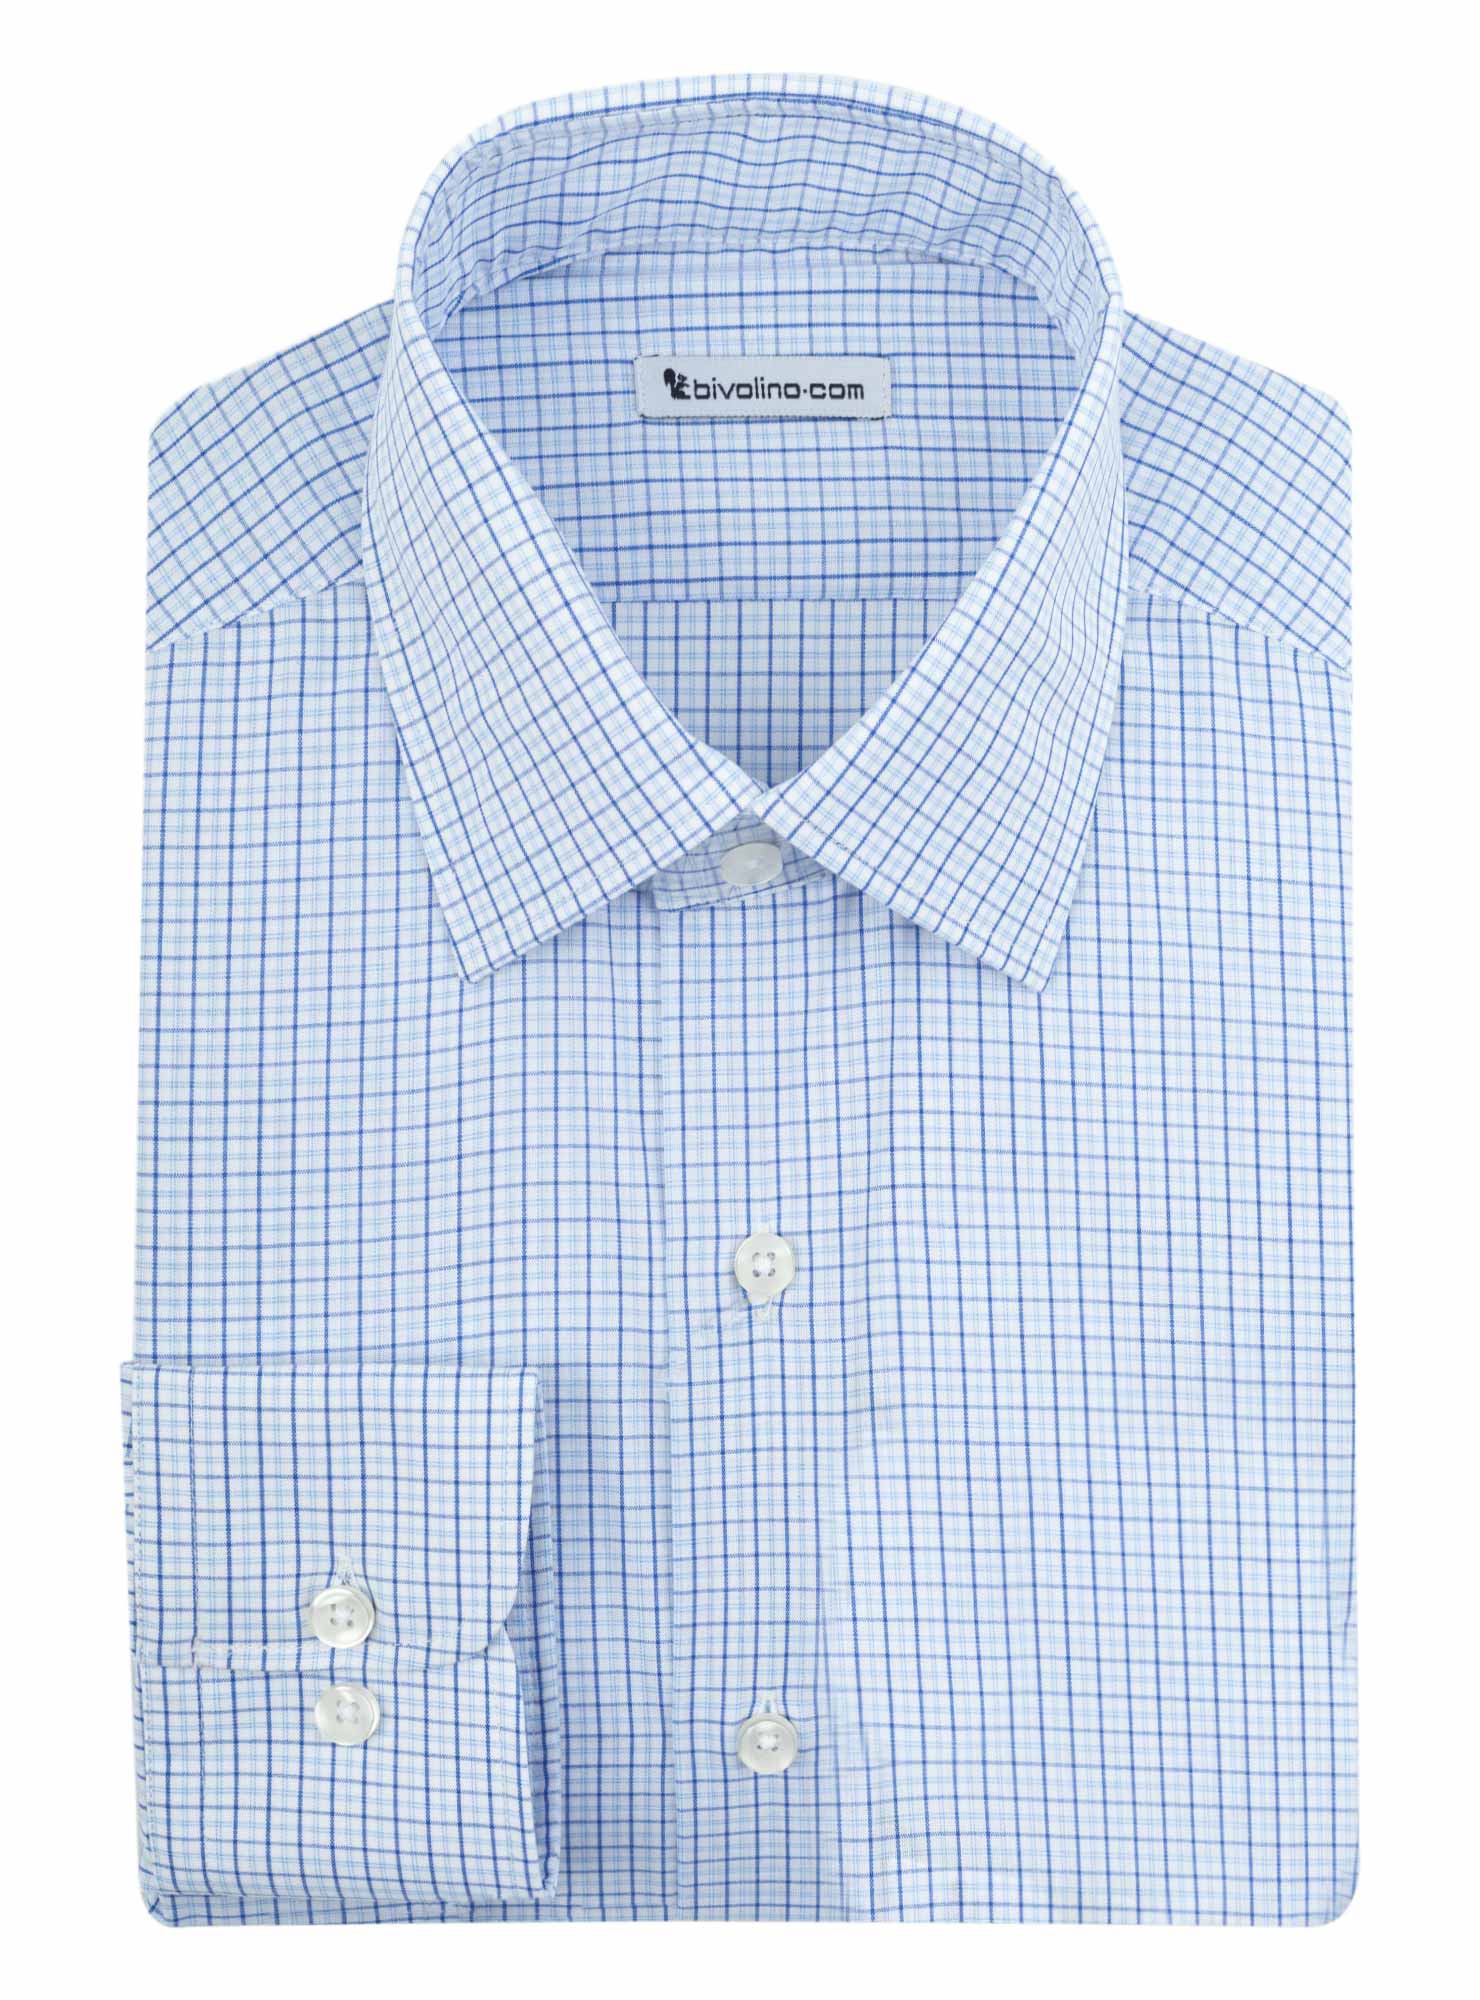 RIMINI - chemise homme sur mesure cot-mix carreaux business bleu - BOREO 1